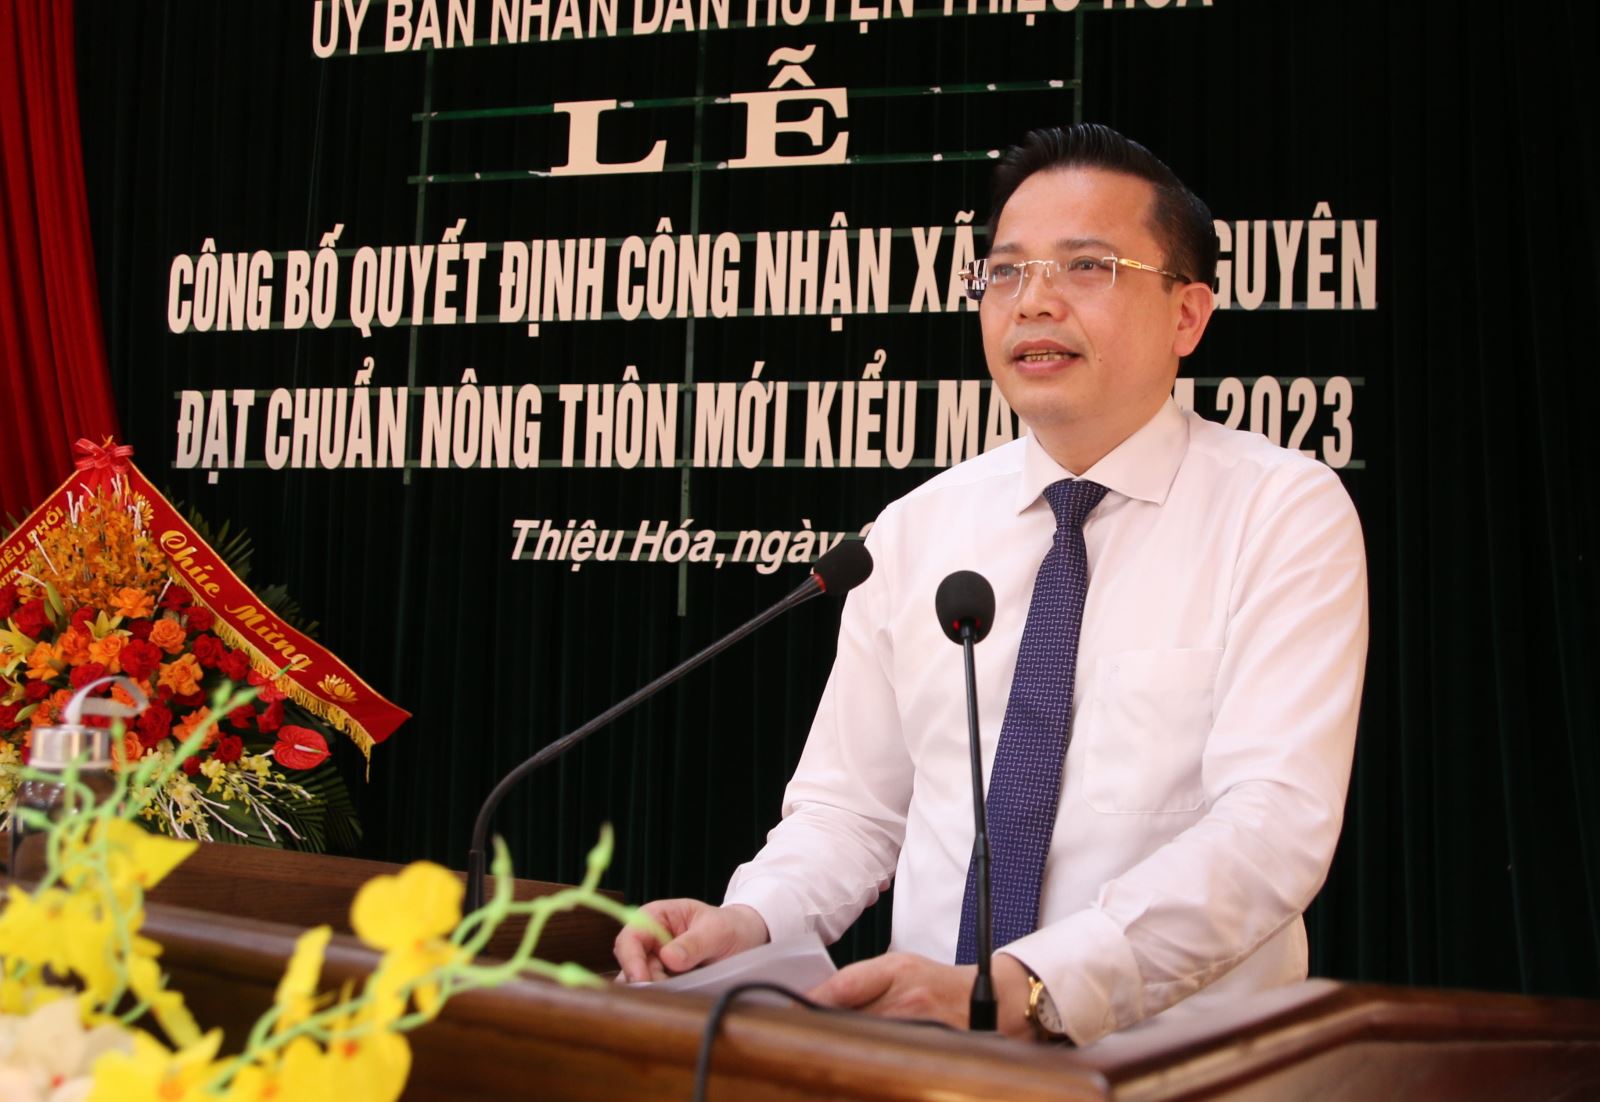 Ông Hoàng Trọng Cường, Chủ tịch UBND huyện Thiệu Hóa phát biểu tại buổi lễ